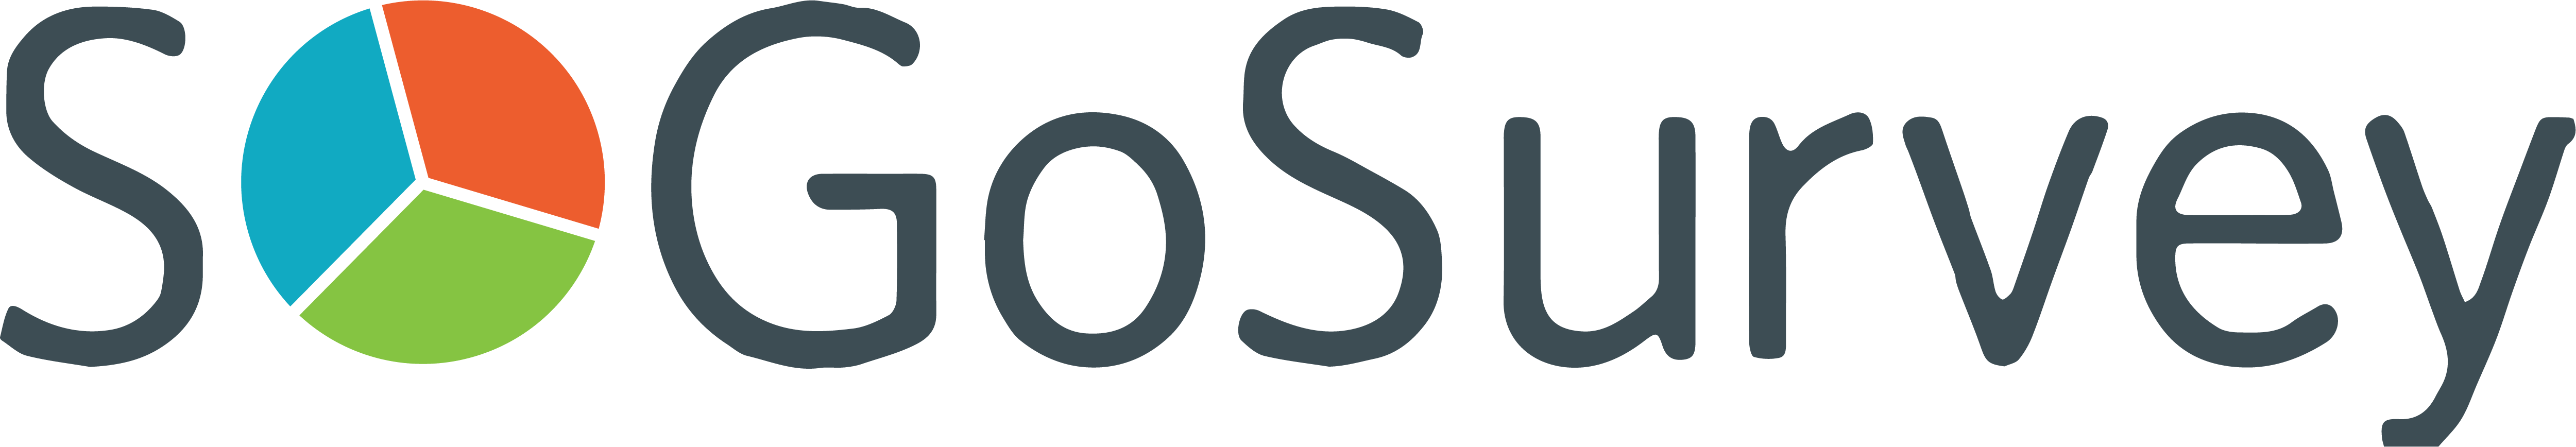 SoGoSurvey logo